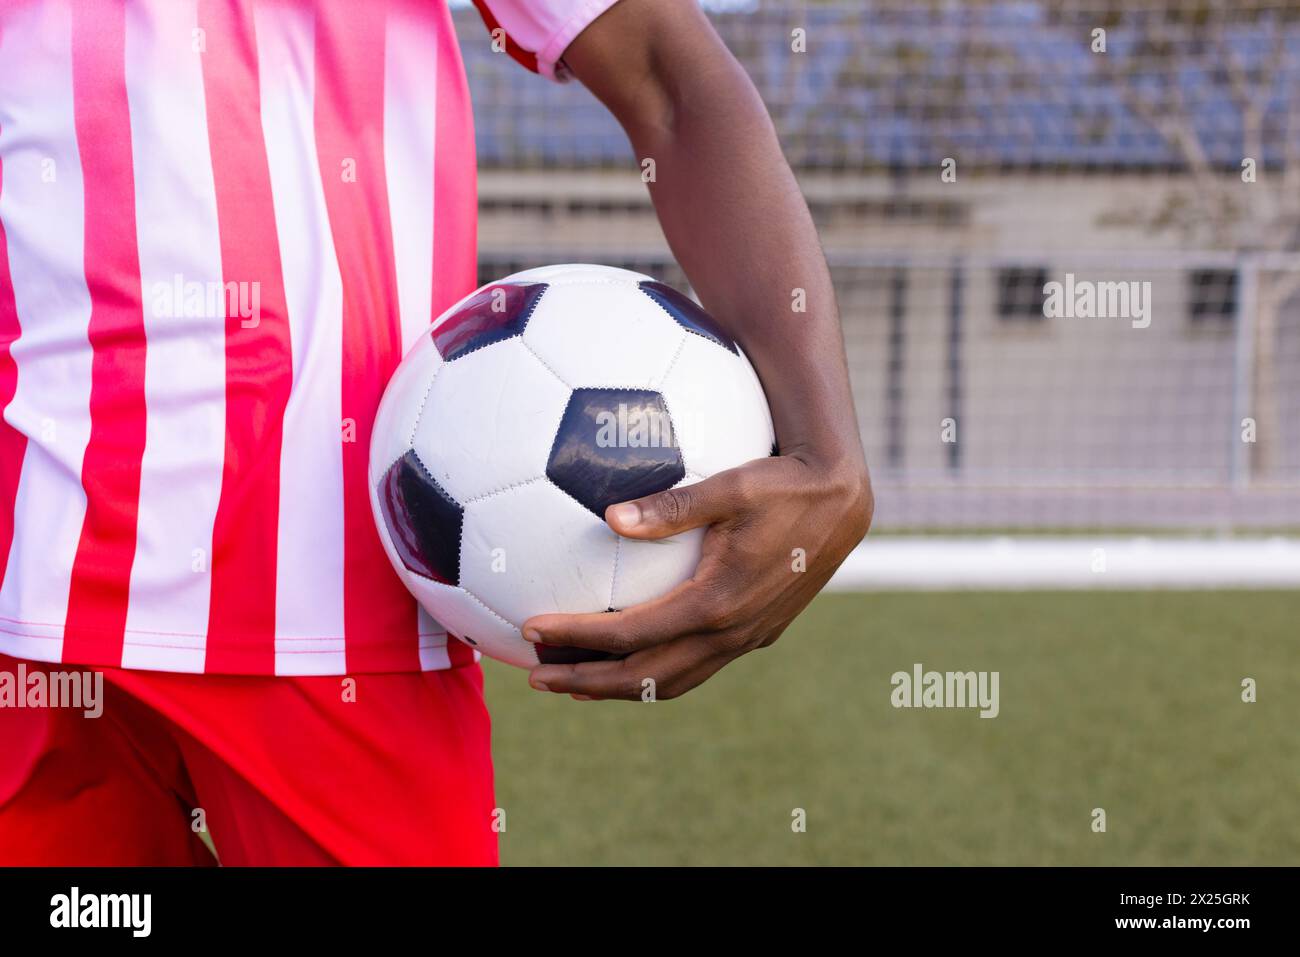 Schwarzer männlicher Athlet in rot-weiß gestreifter Fußballausrüstung hält einen Ball Stockfoto